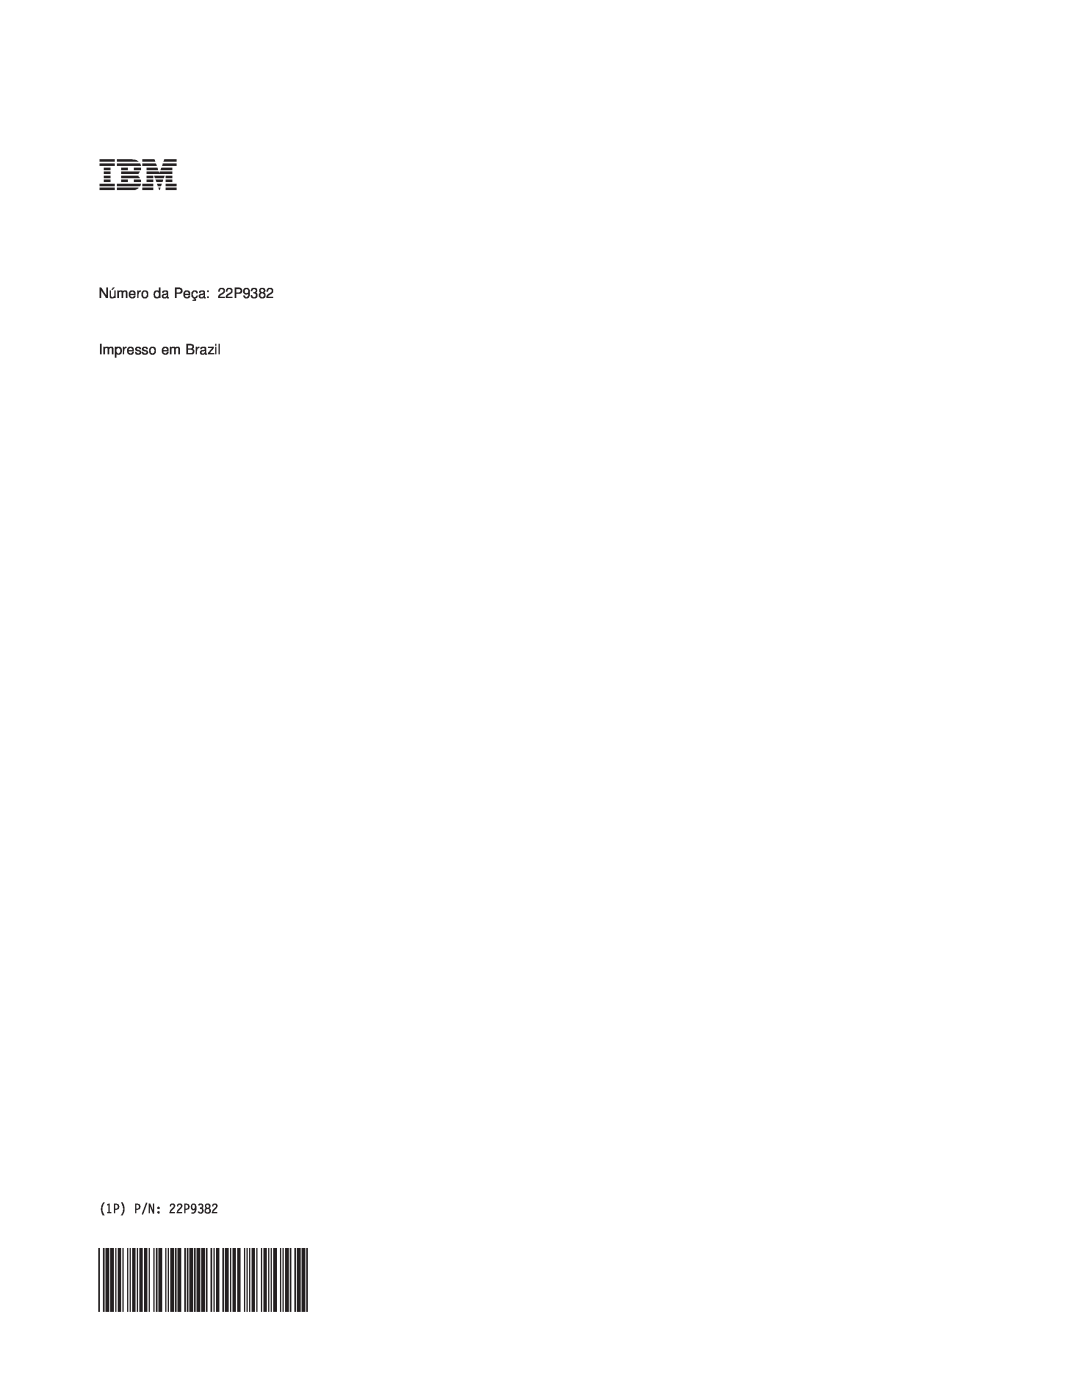 IBM M400 manual Número da Peça 22P9382 Impresso em Brazil, 1P P/N 22P9382 